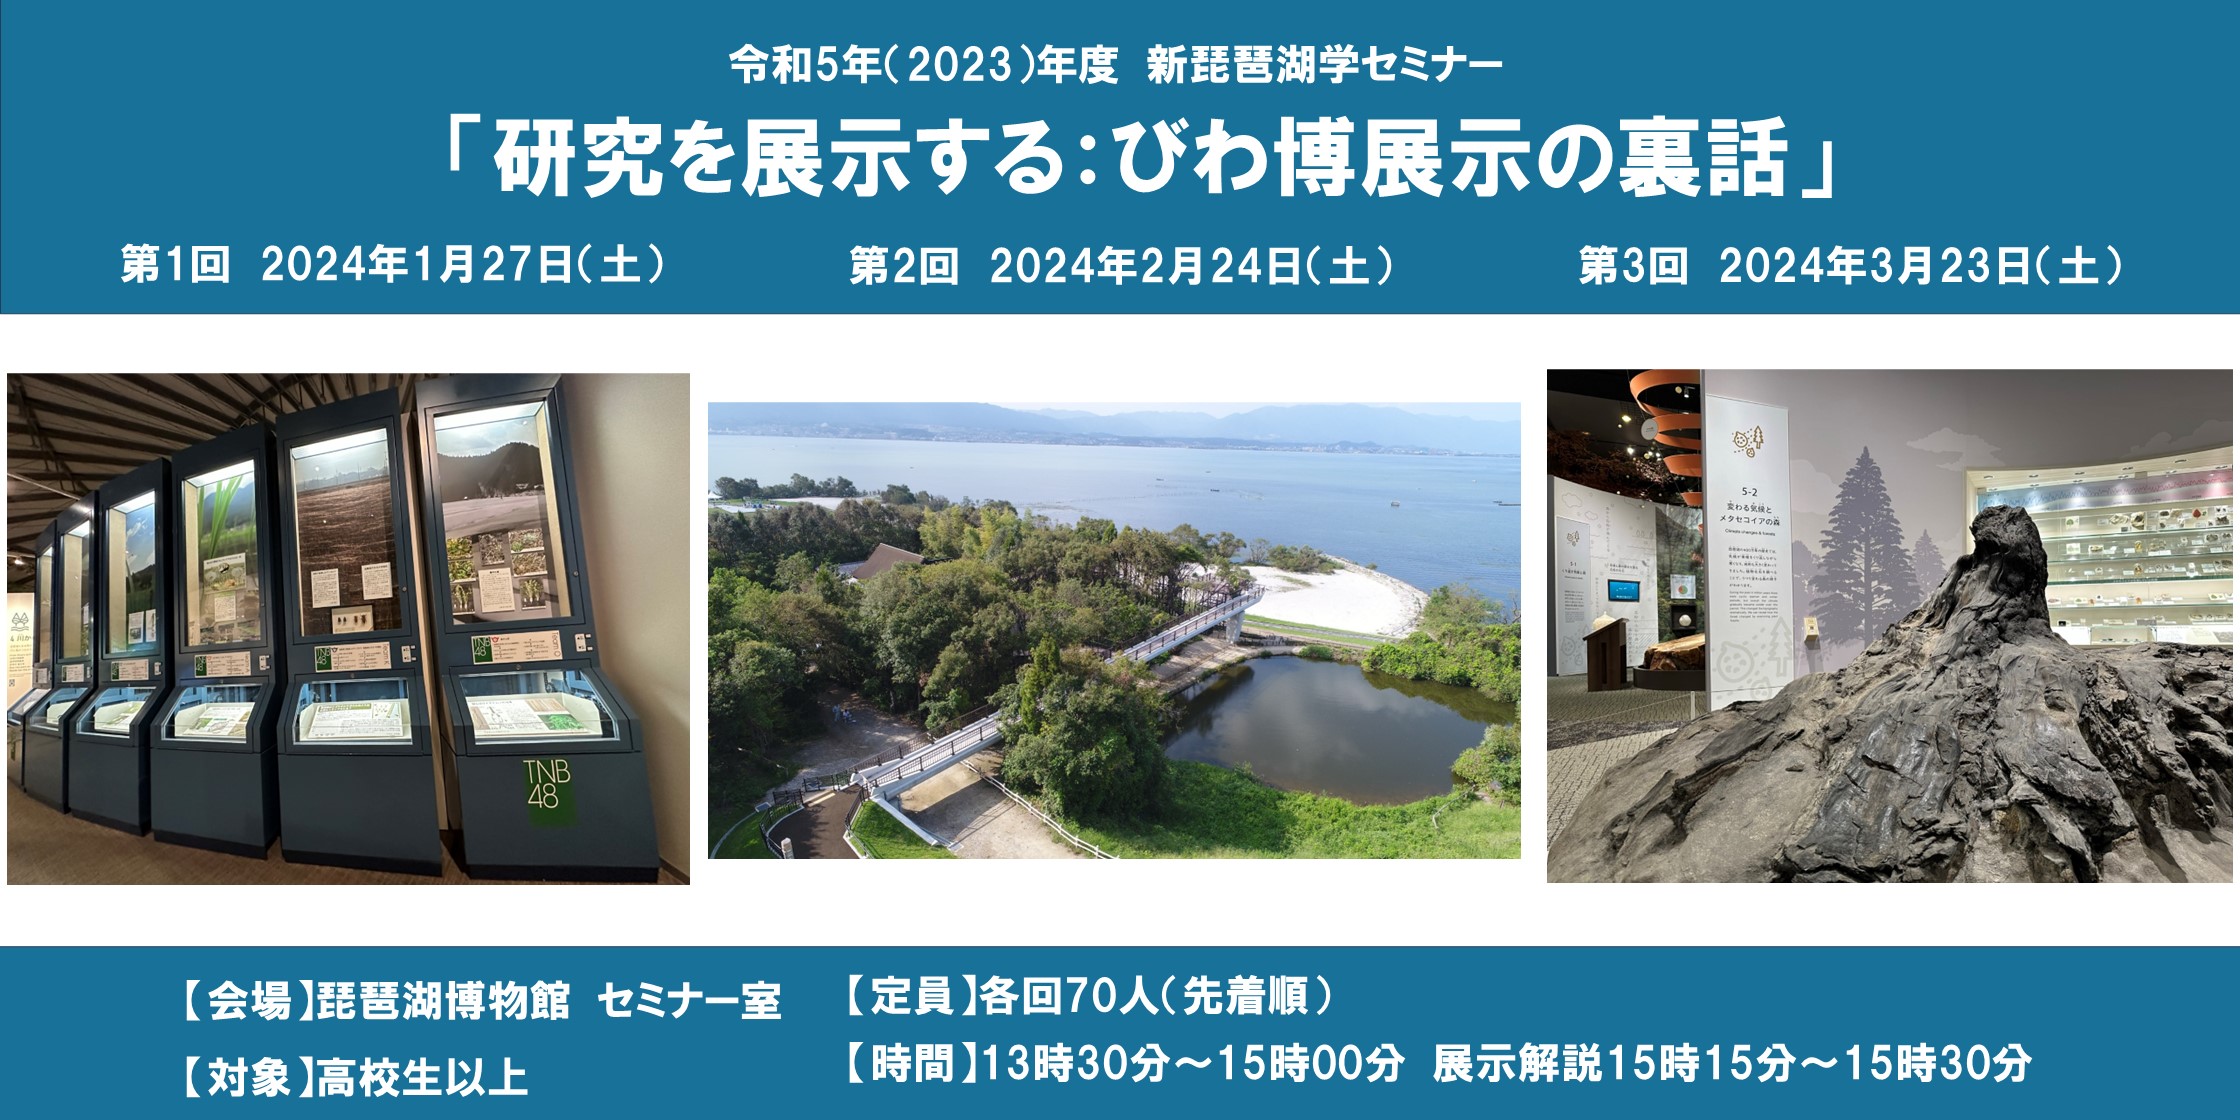 約６年にわたるリニューアルで生まれた 常設展示のこだわりを新琵琶湖学セミナーで語ります！